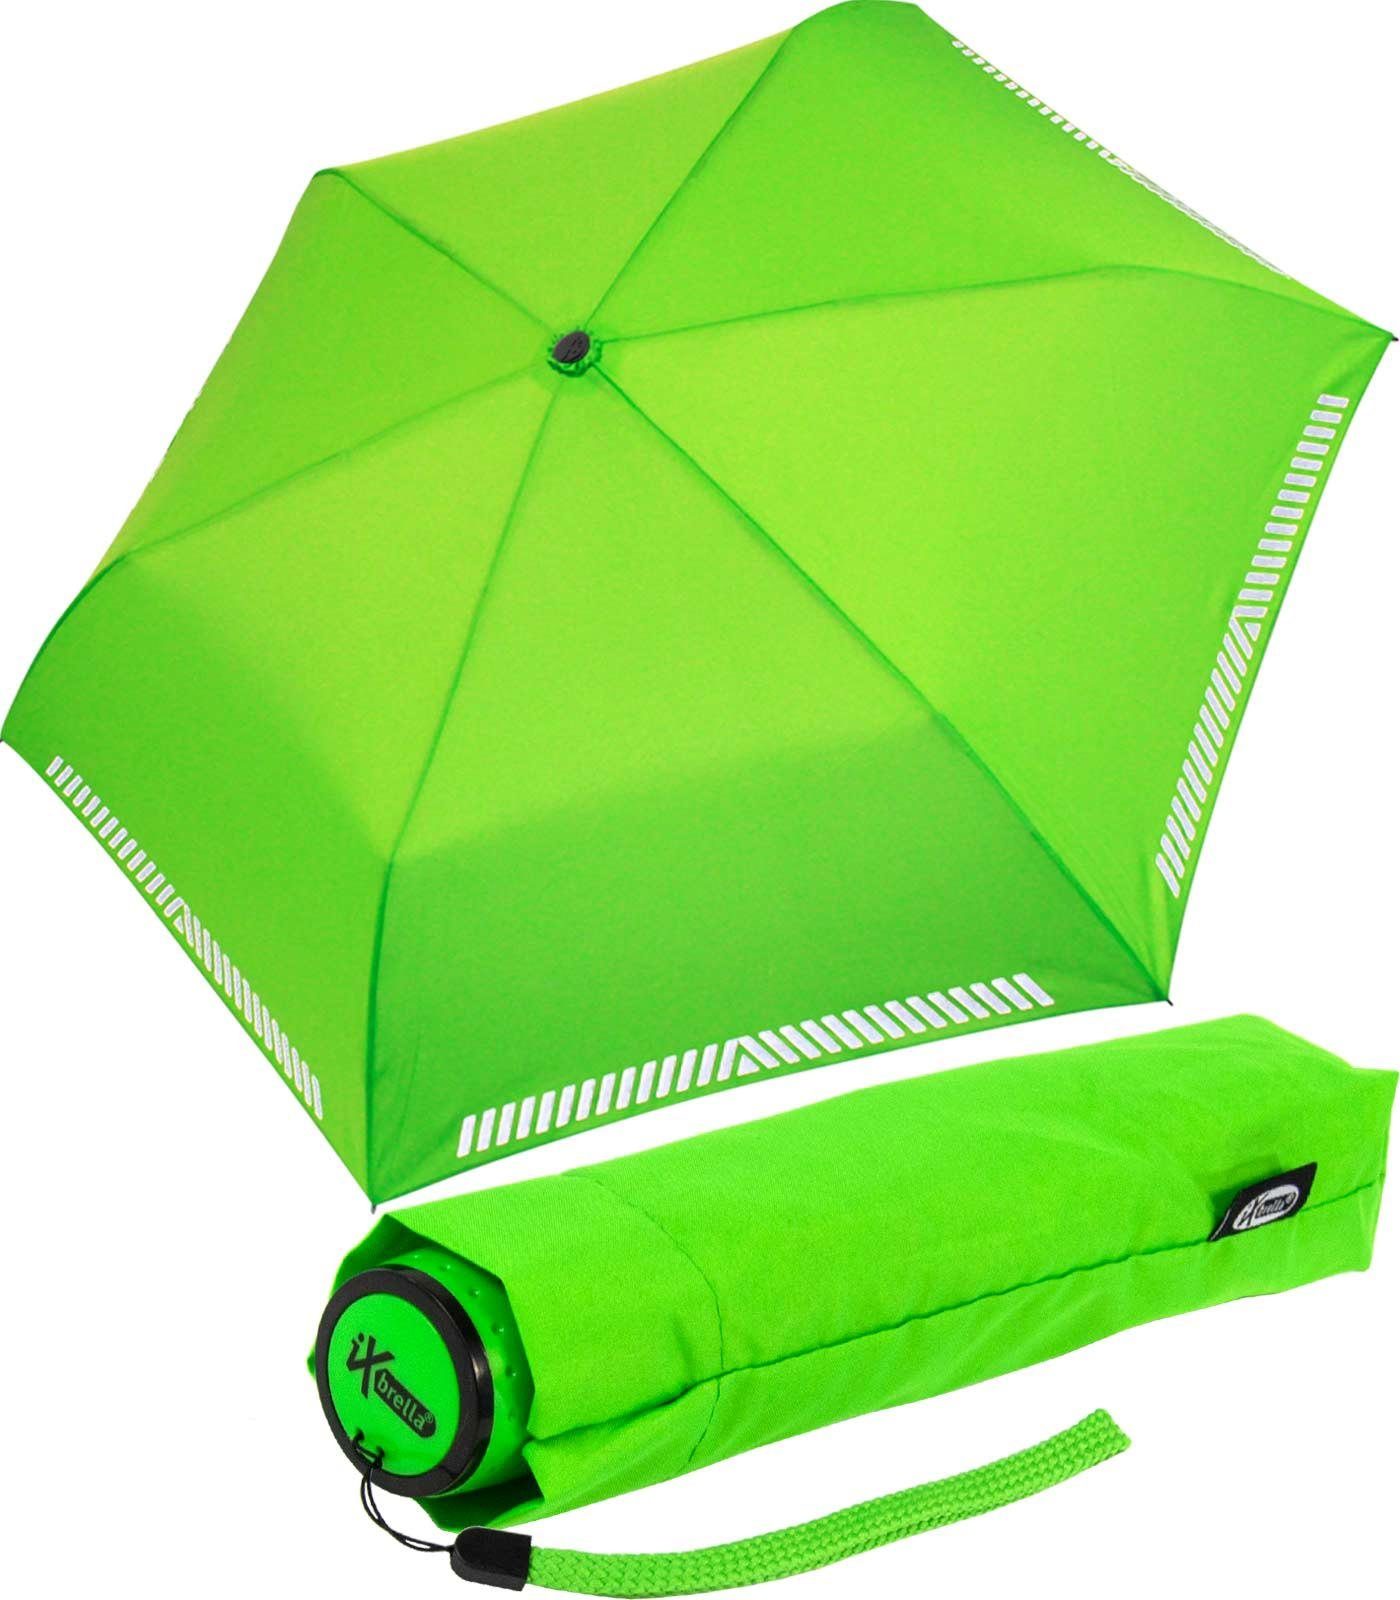 iX-brella Taschenregenschirm Mini Kinderschirm Safety Reflex extra leicht, reflektierend neon-grün